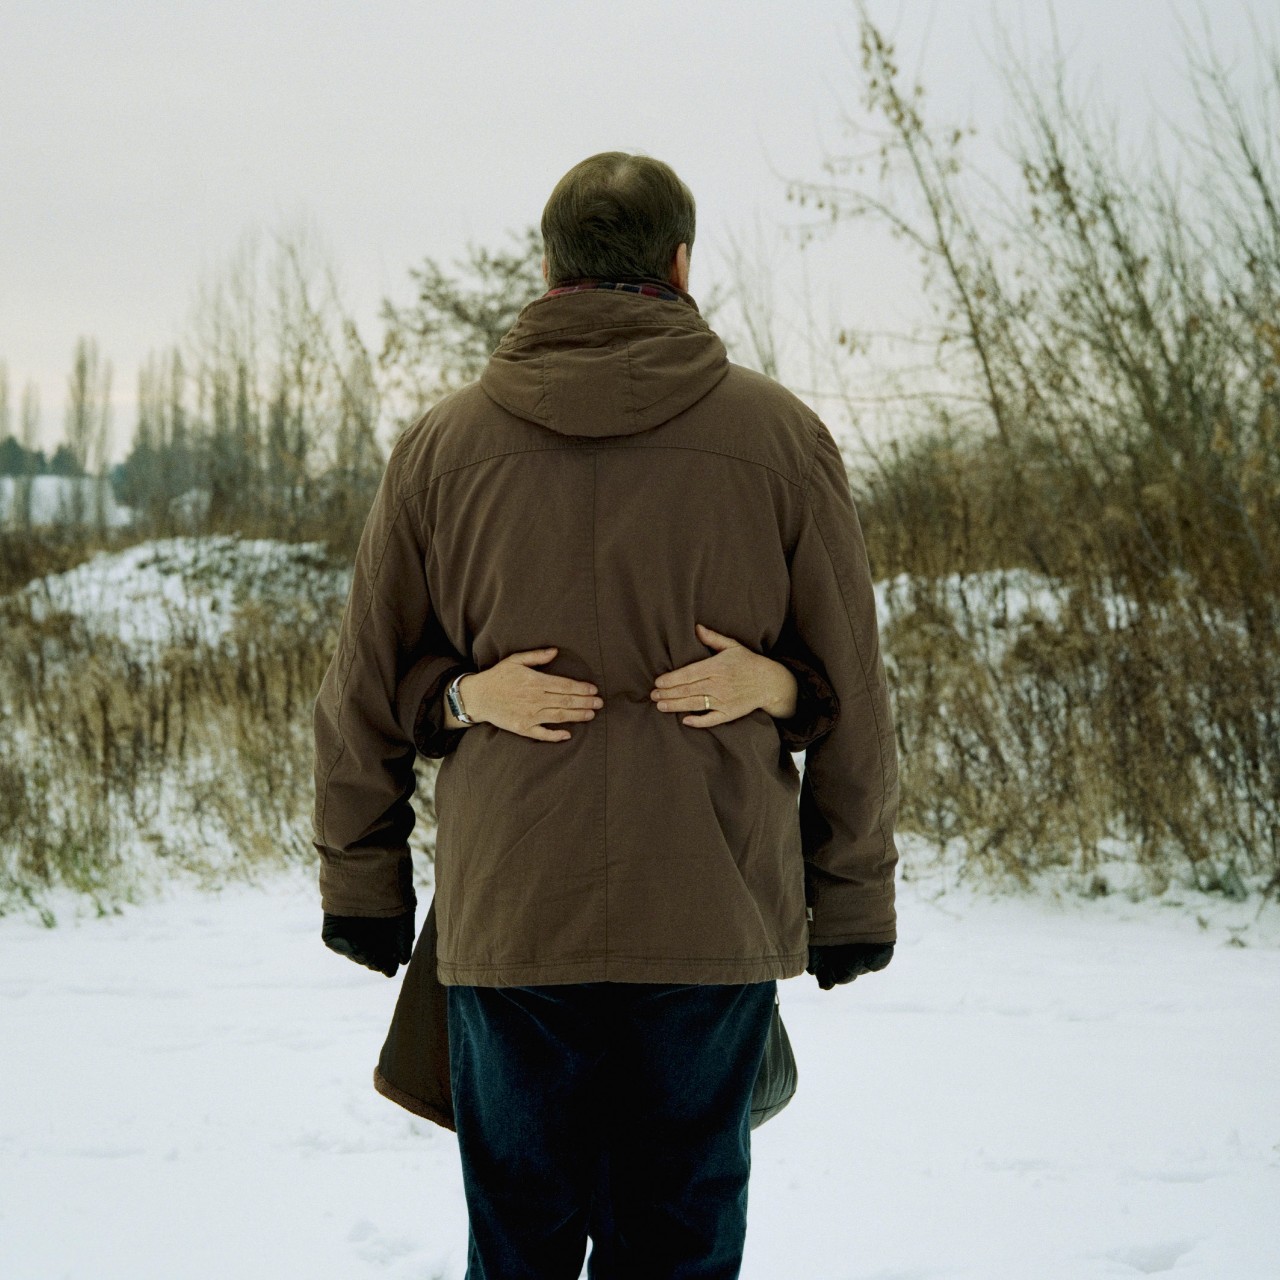 Ein Mann steht mit dem Rücken zur Kamera in Winterlandschaft. Auf dem Rücken zwei Hände von einer Frau, die ihn umarmt.